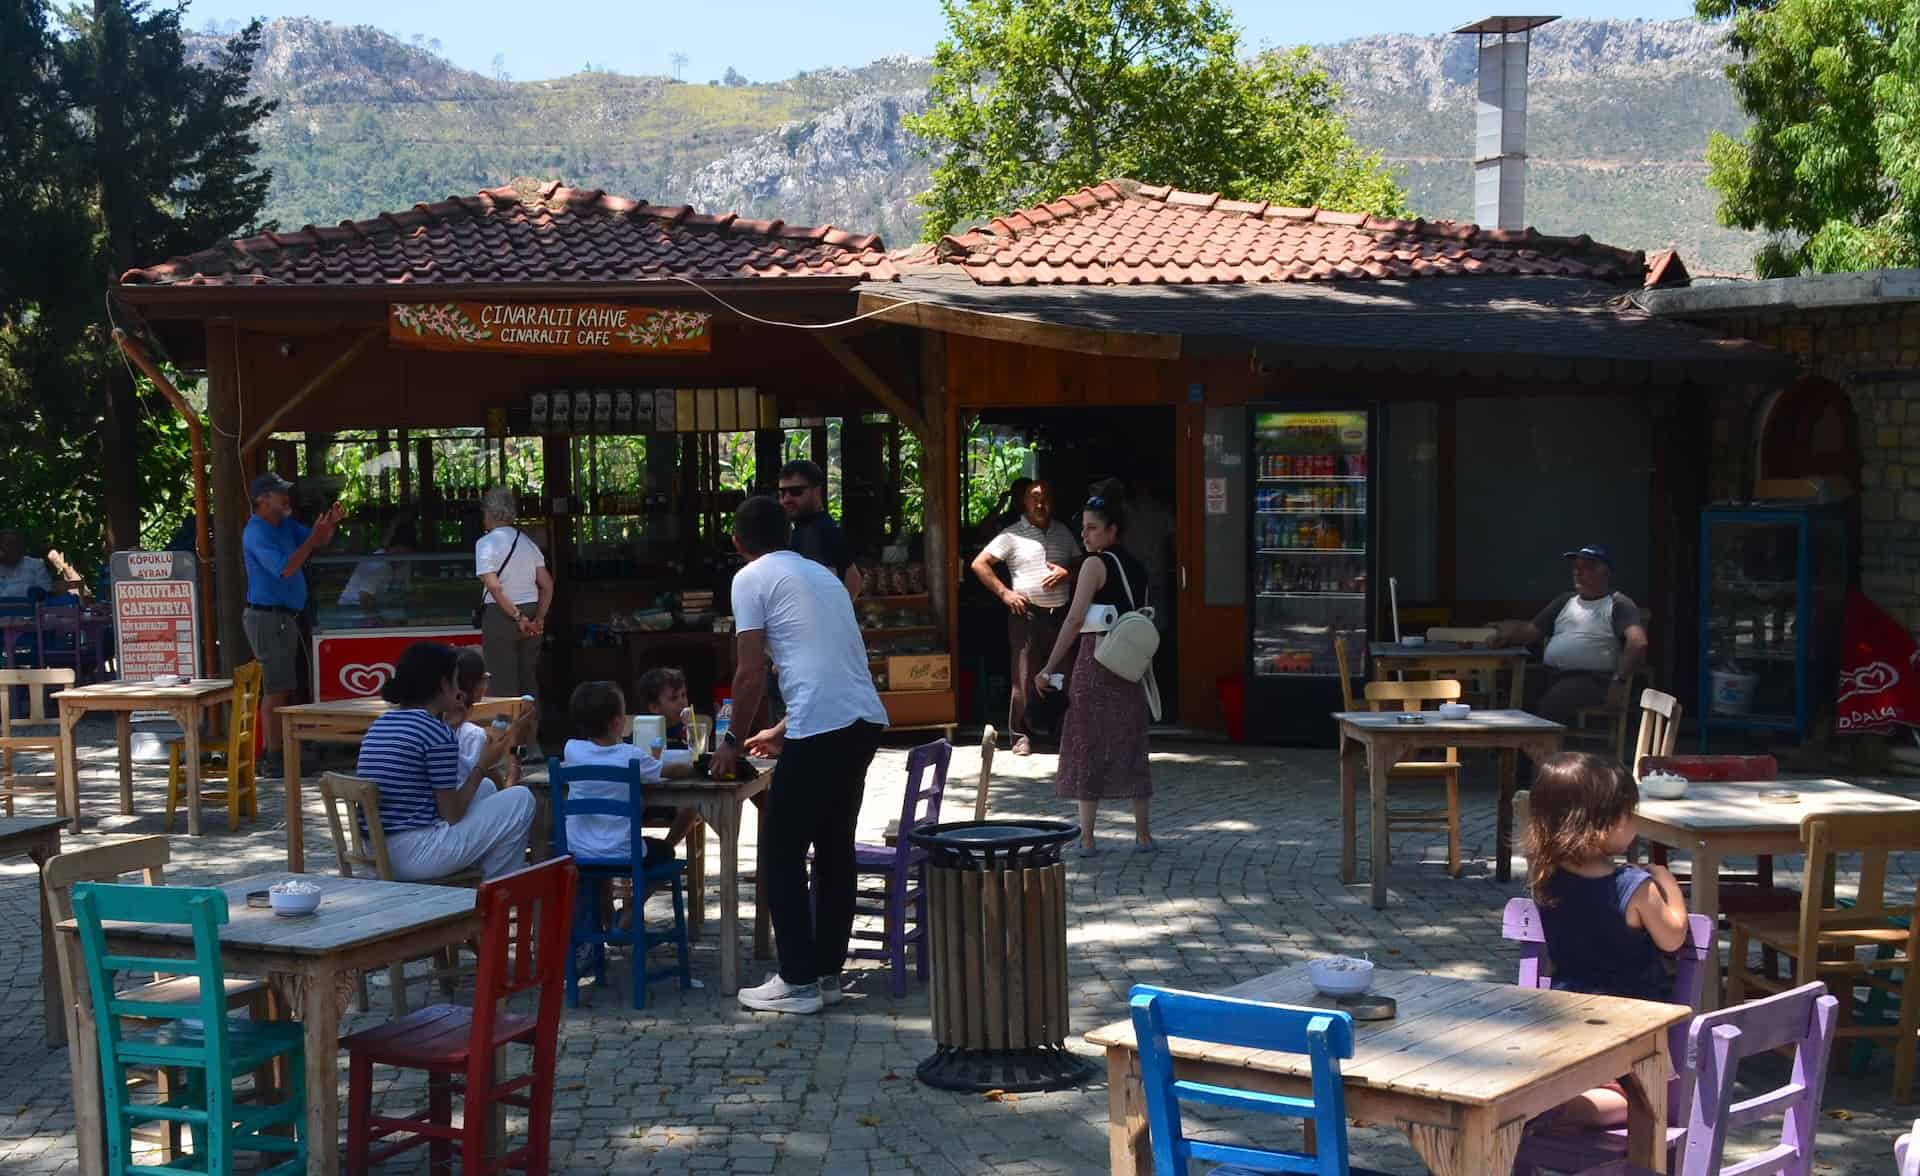 Çınaraltı Cafe in Bayır on the Bozburun Peninsula in Turkey